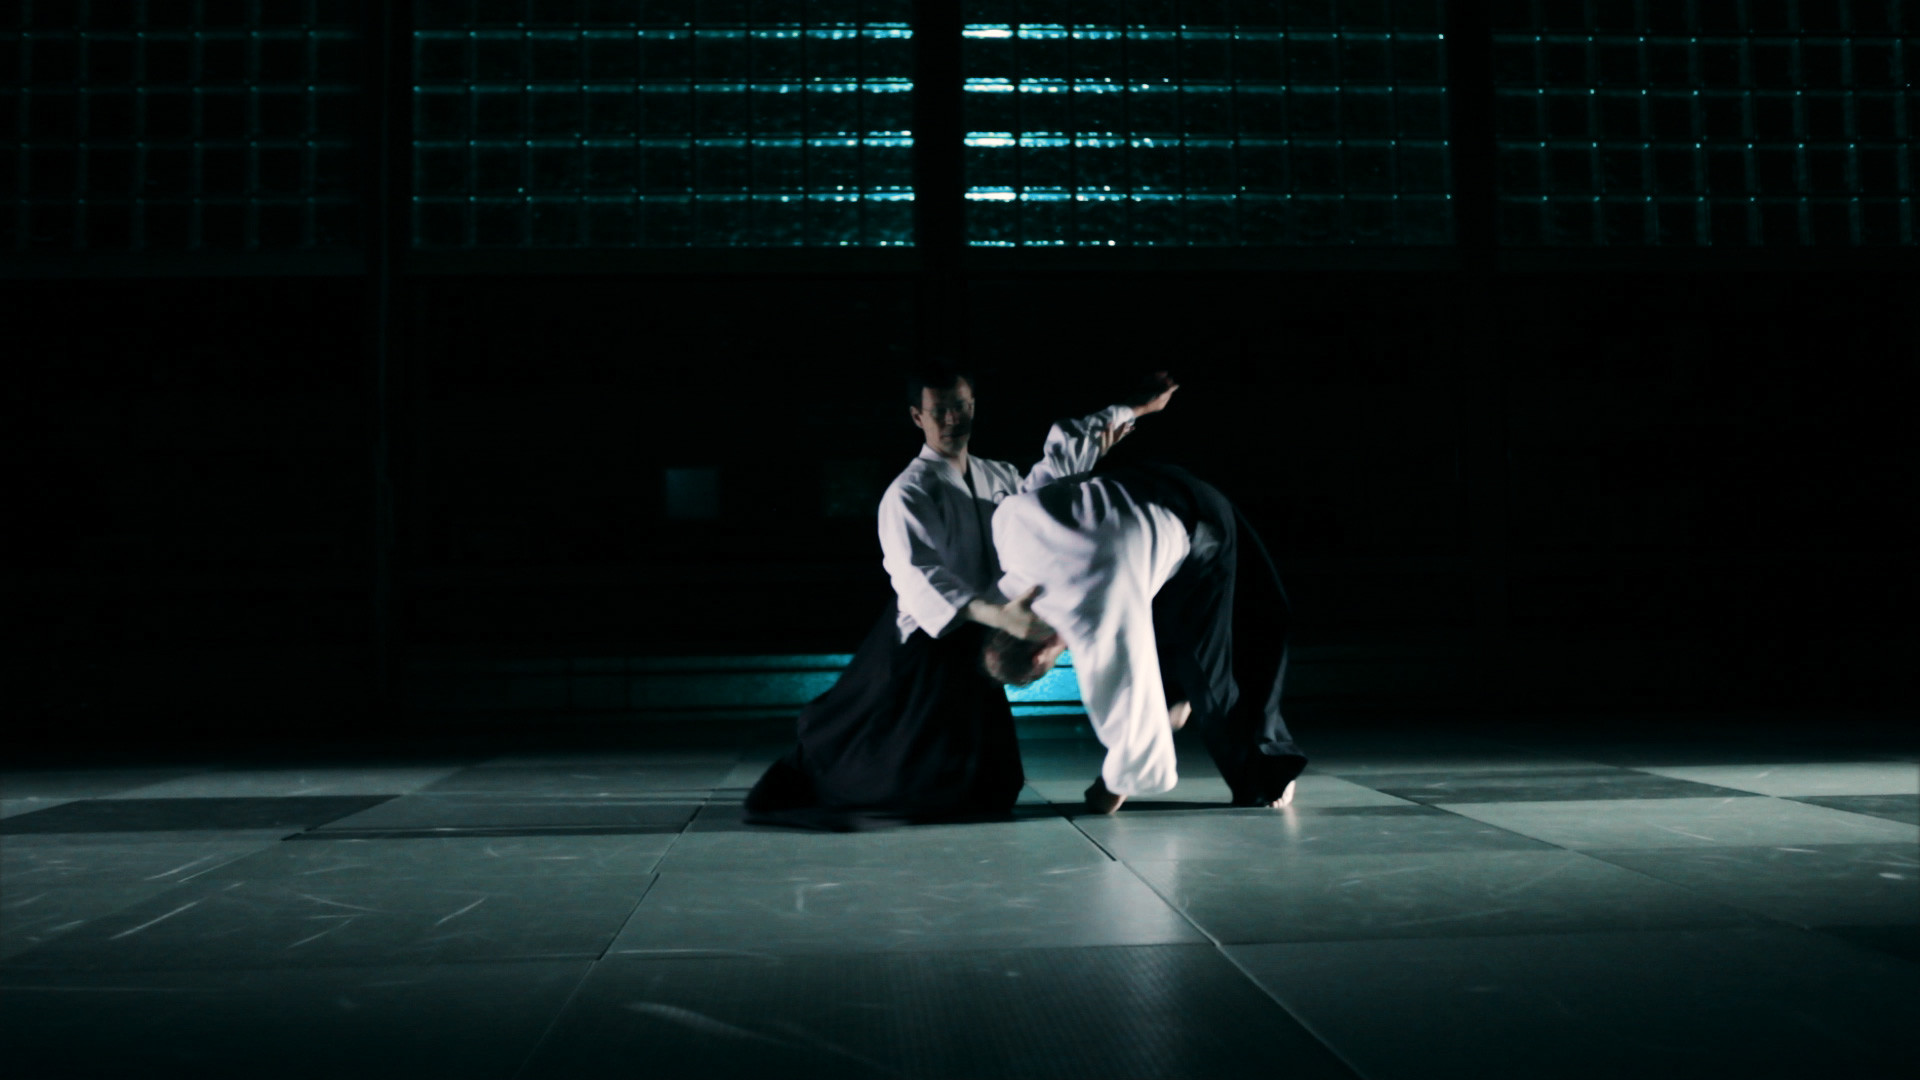 aikido tapete,aikido,performancekunst,moderner tanz,performance,bühne